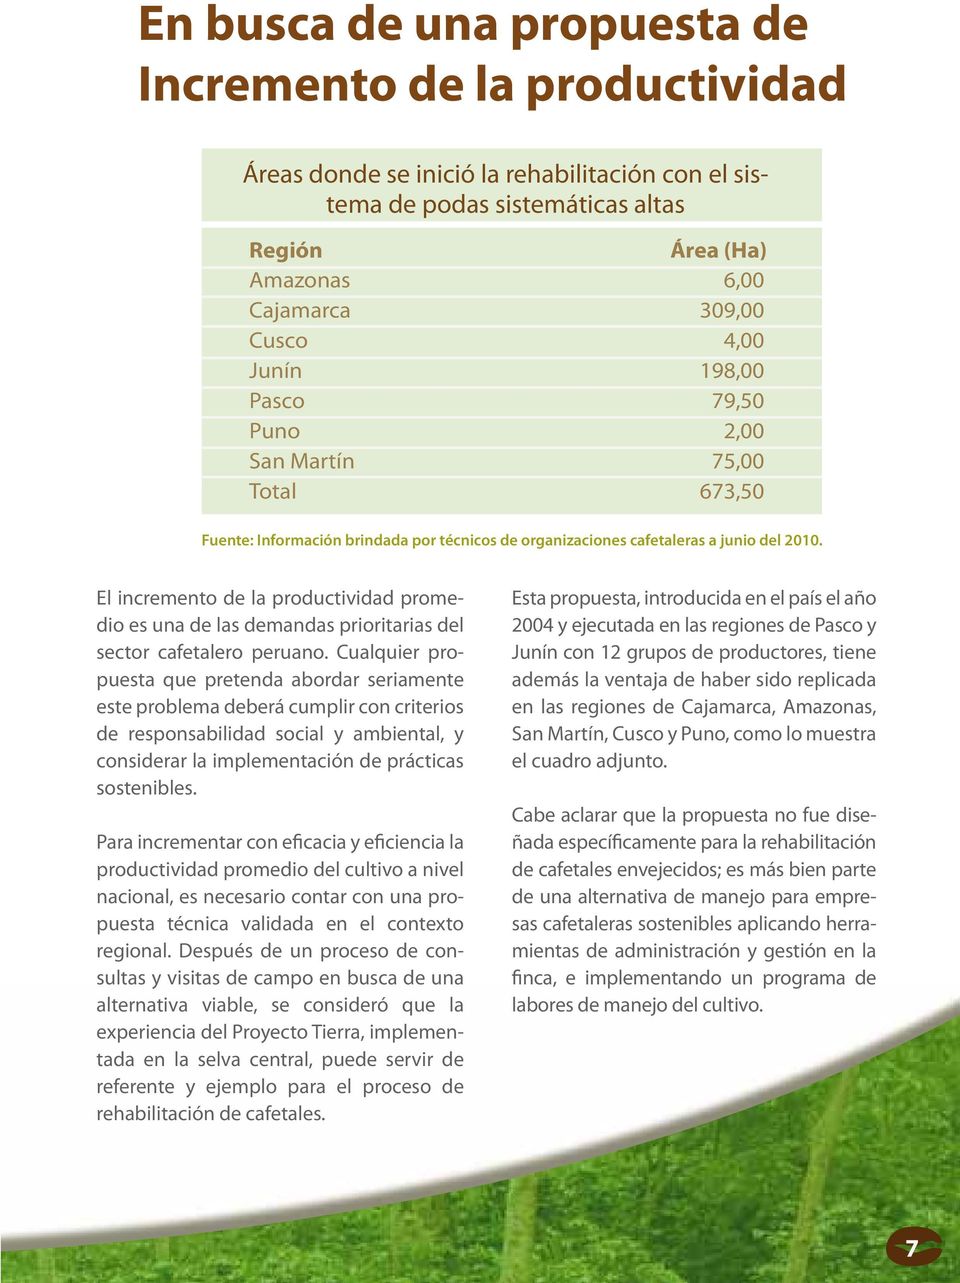 El incremento de la productividad promedio es una de las demandas prioritarias del sector cafetalero peruano.